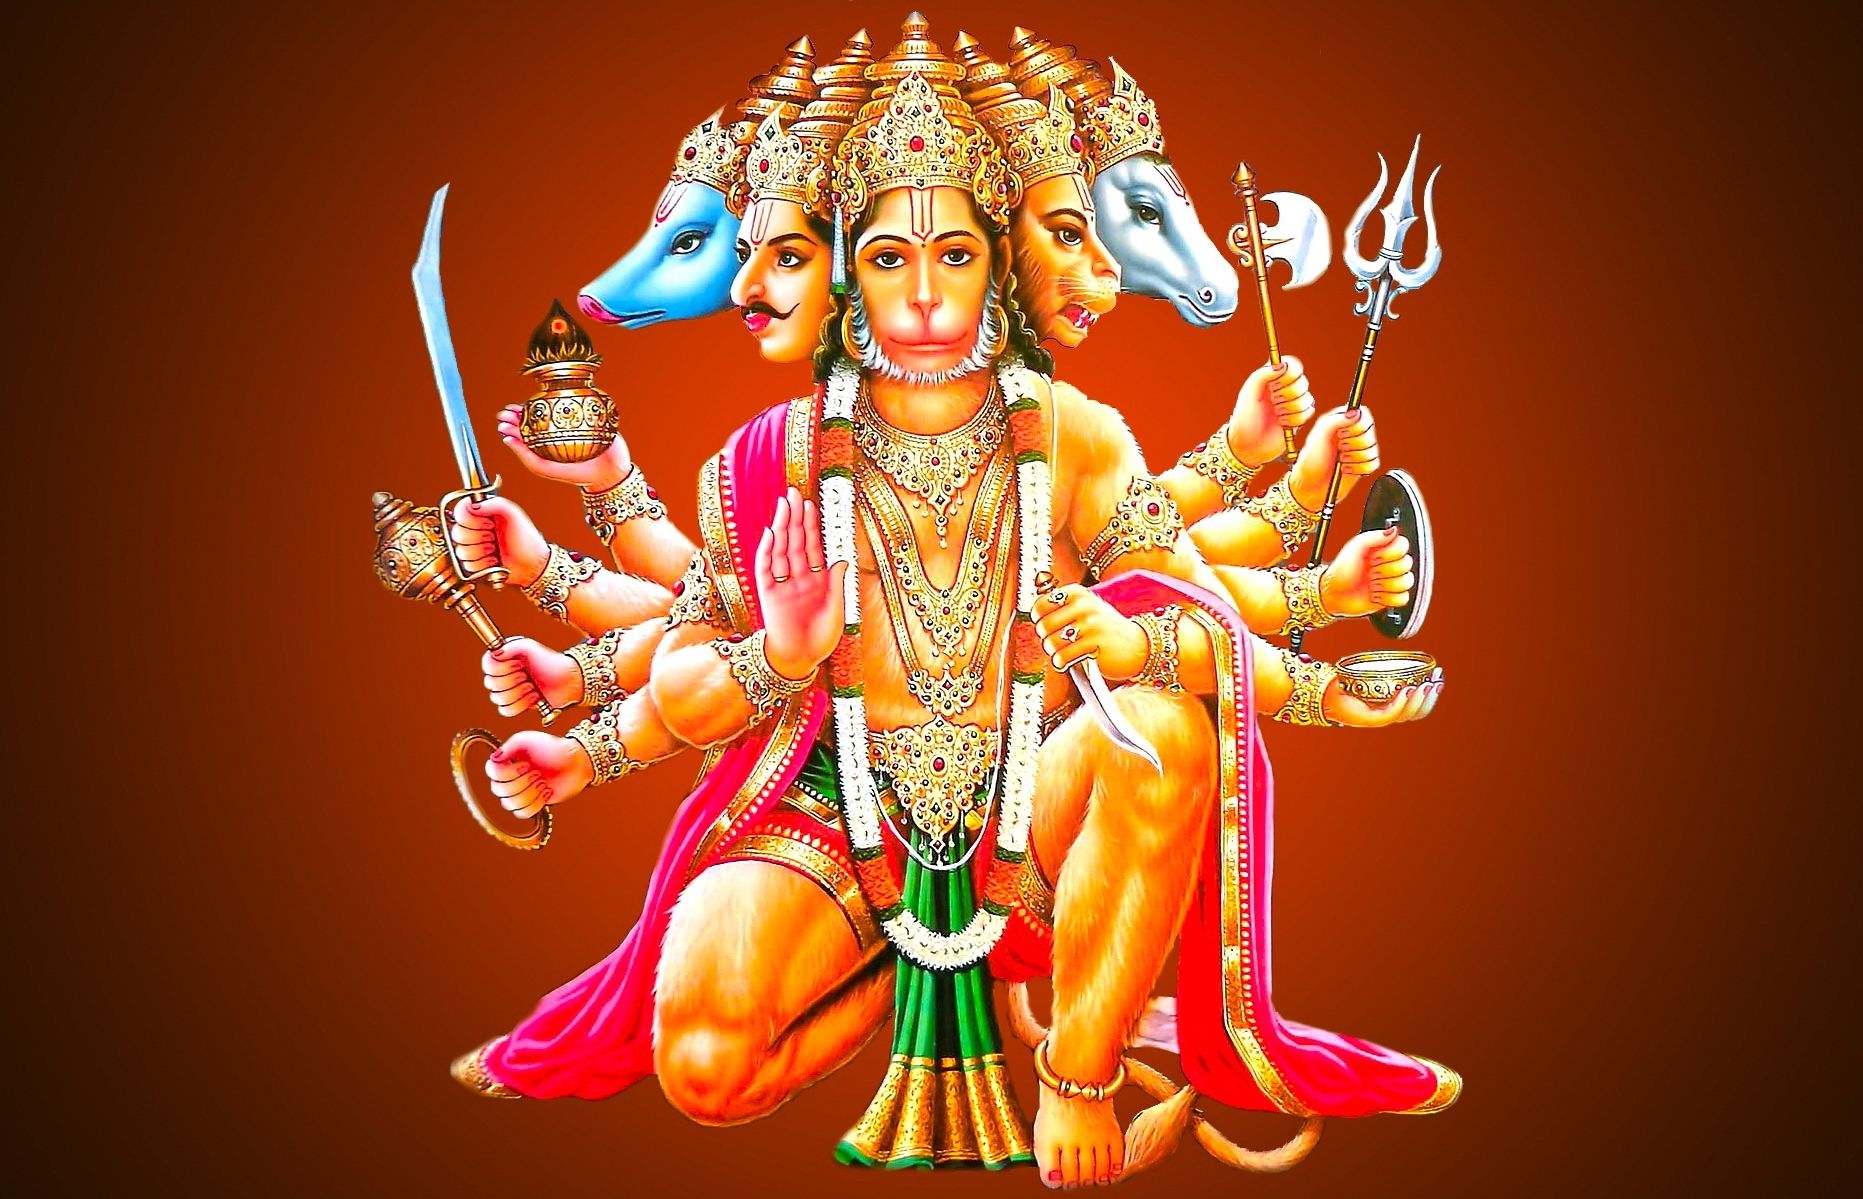 God Hanuman HD Photo. Hanuman Ji Image Full HD Download Free For Mobile Phones